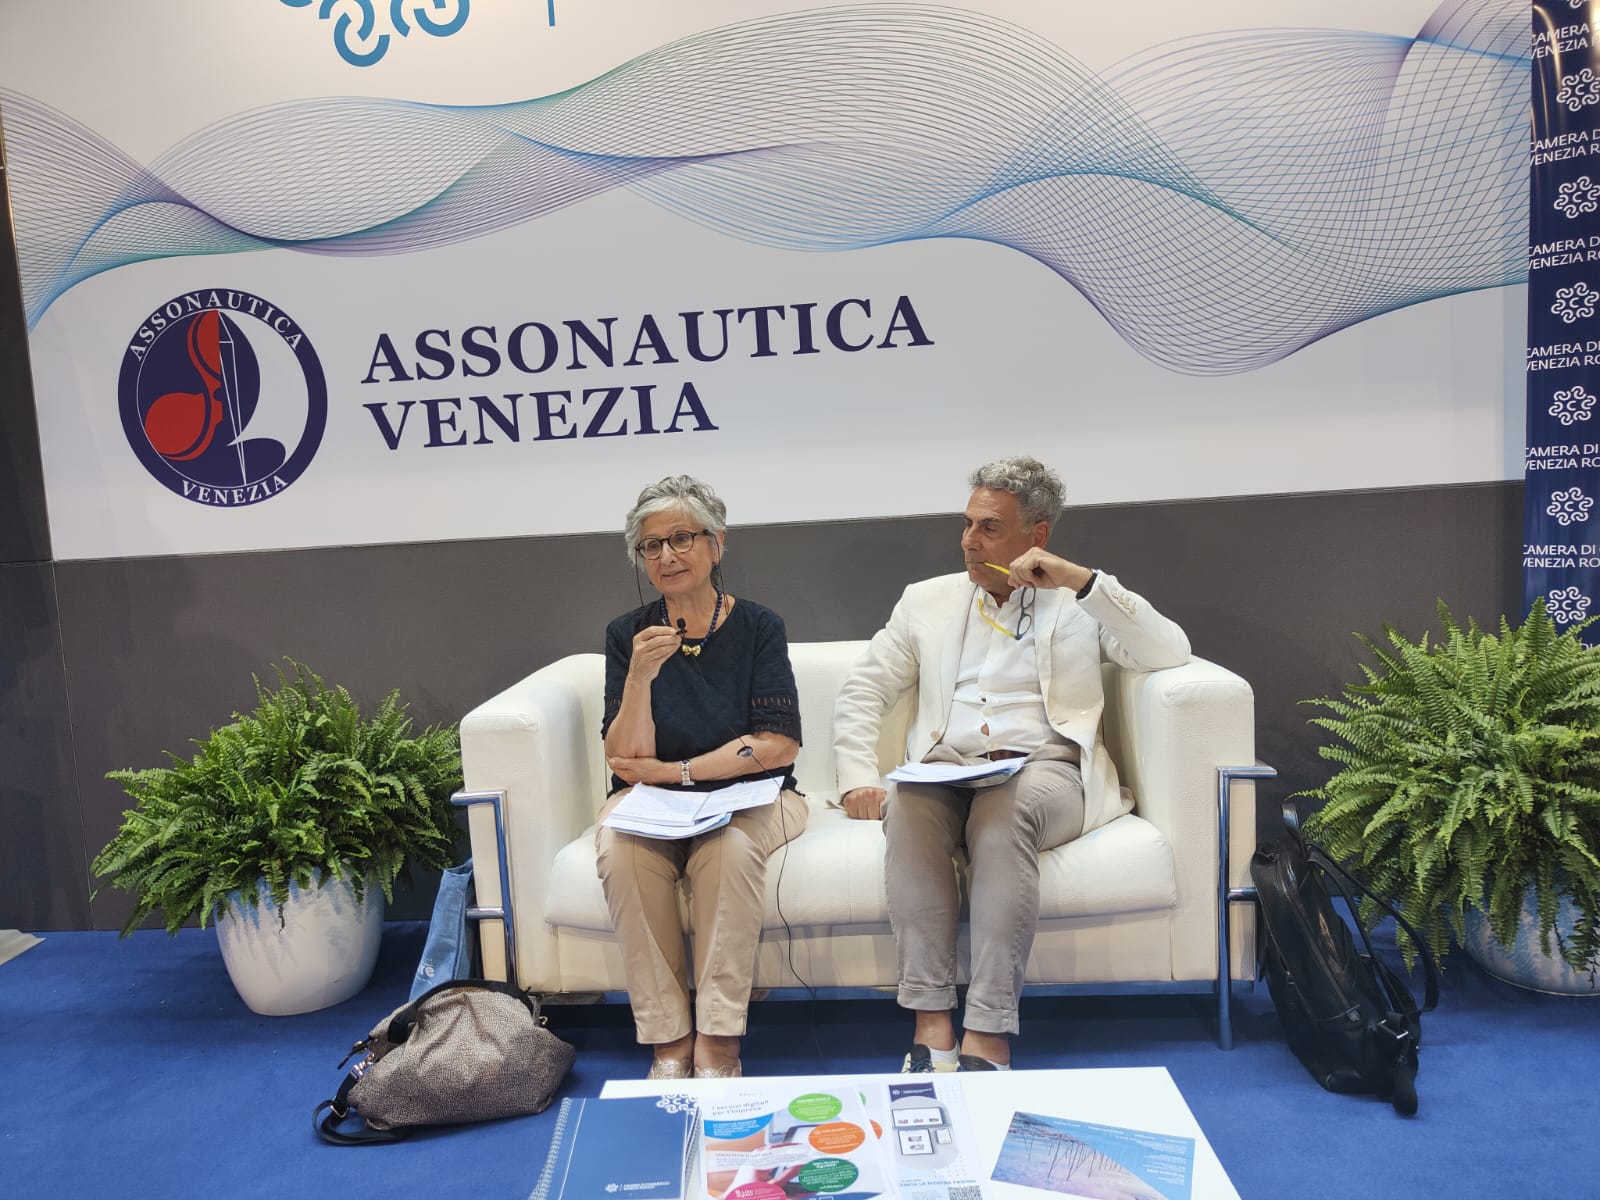 Salone di Venezia, Assonautica insiste su visione integrata economia acque interne-economia del mare